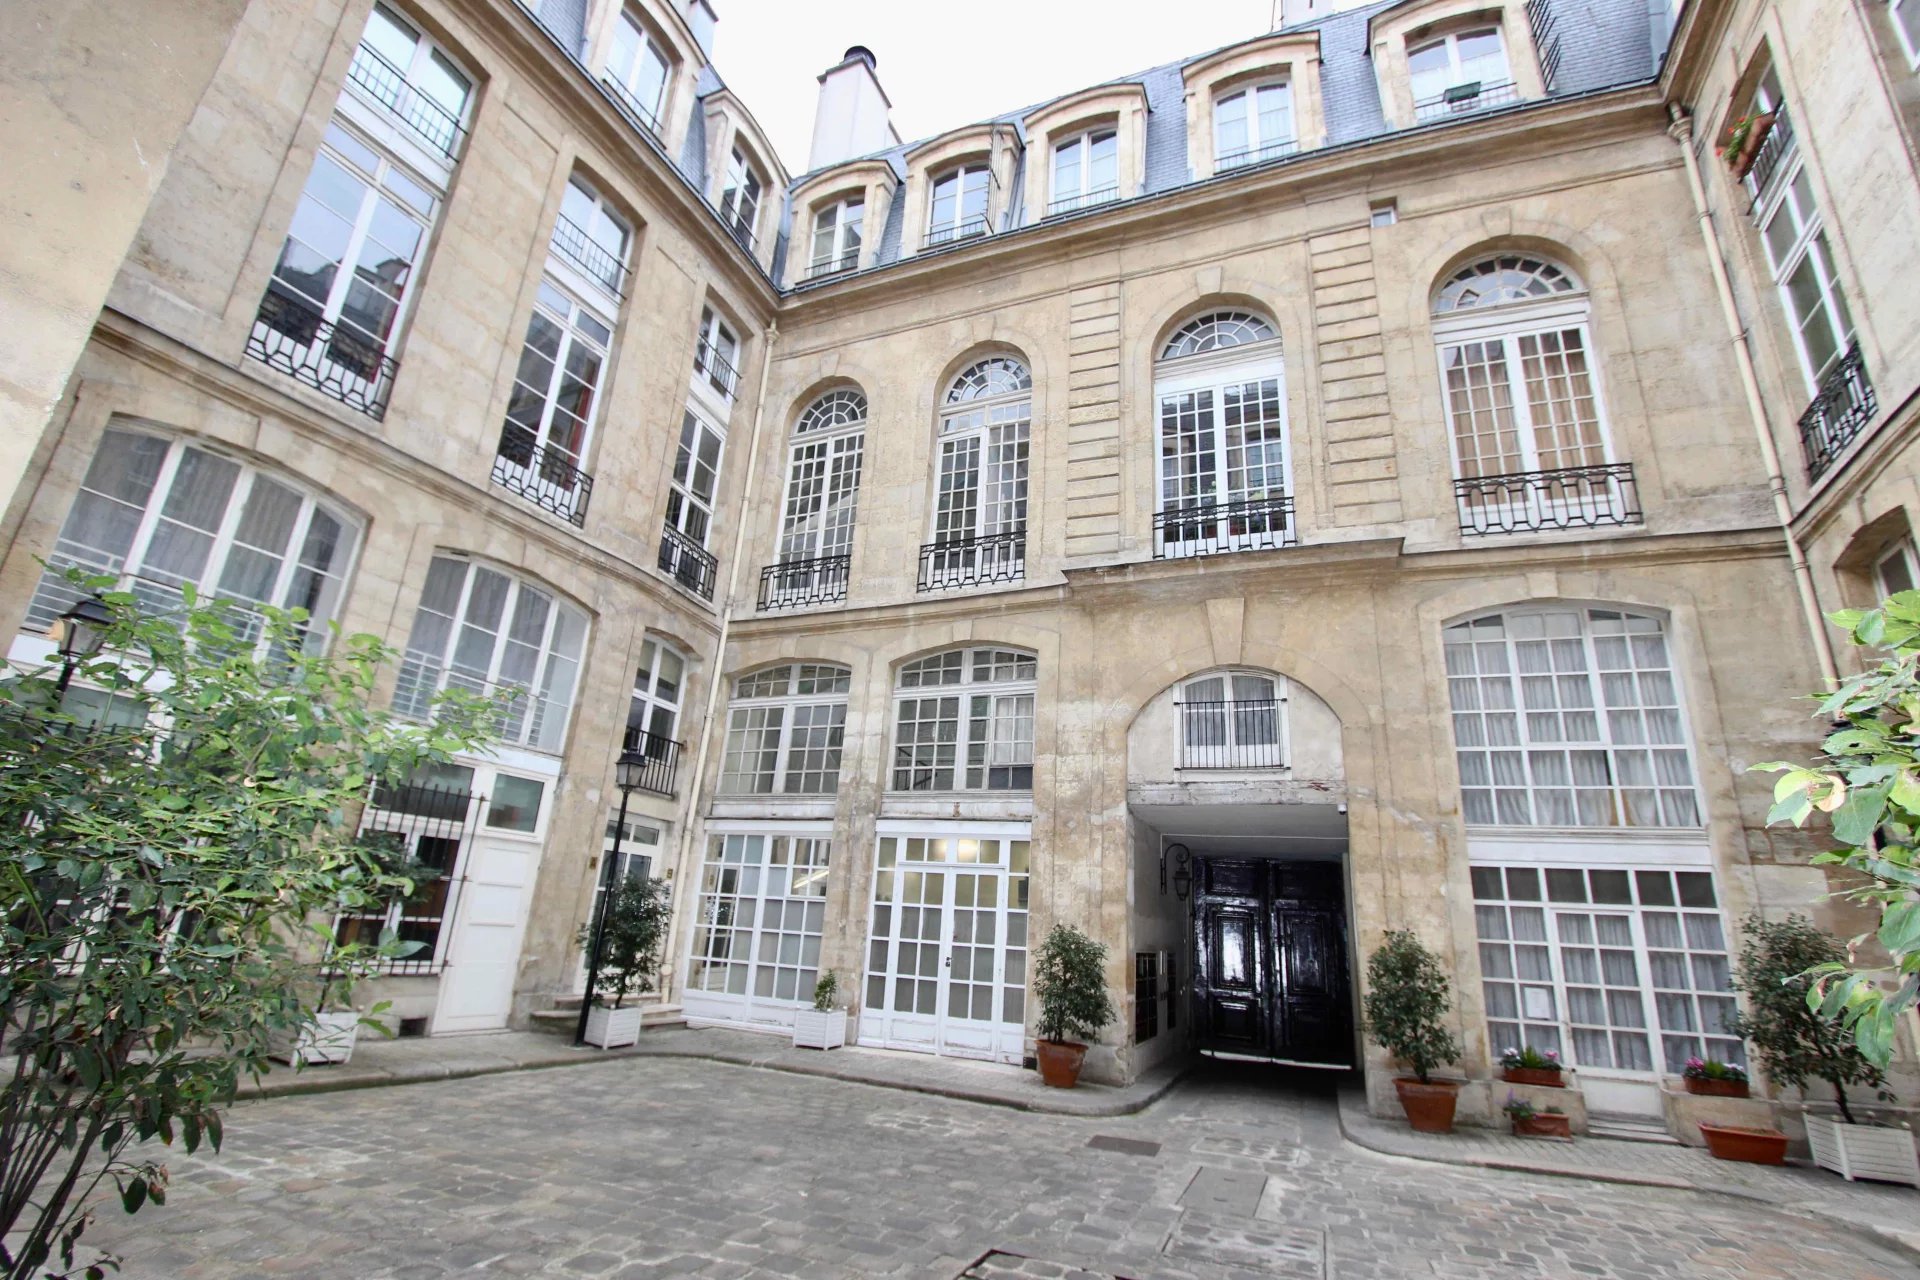 Sale Apartment - Paris 1st (Paris 1er) Halles